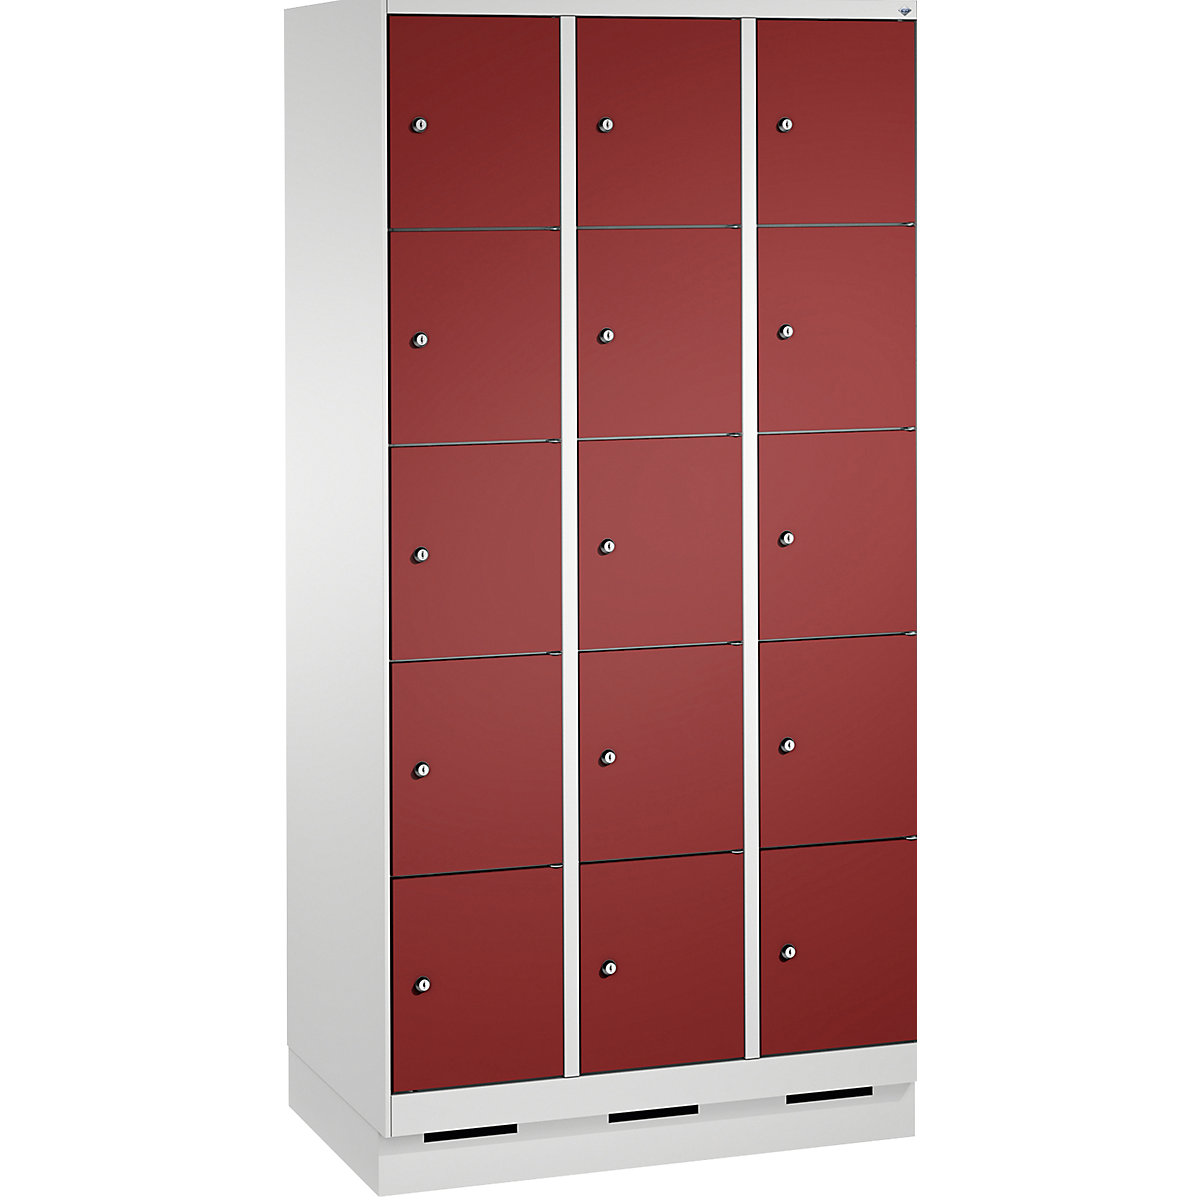 Armoire à casiers sur socle EVOLO – C+P, 3 compartiments, 5 casiers chacun, largeur compartiments 300 mm, gris clair / rouge rubis-9